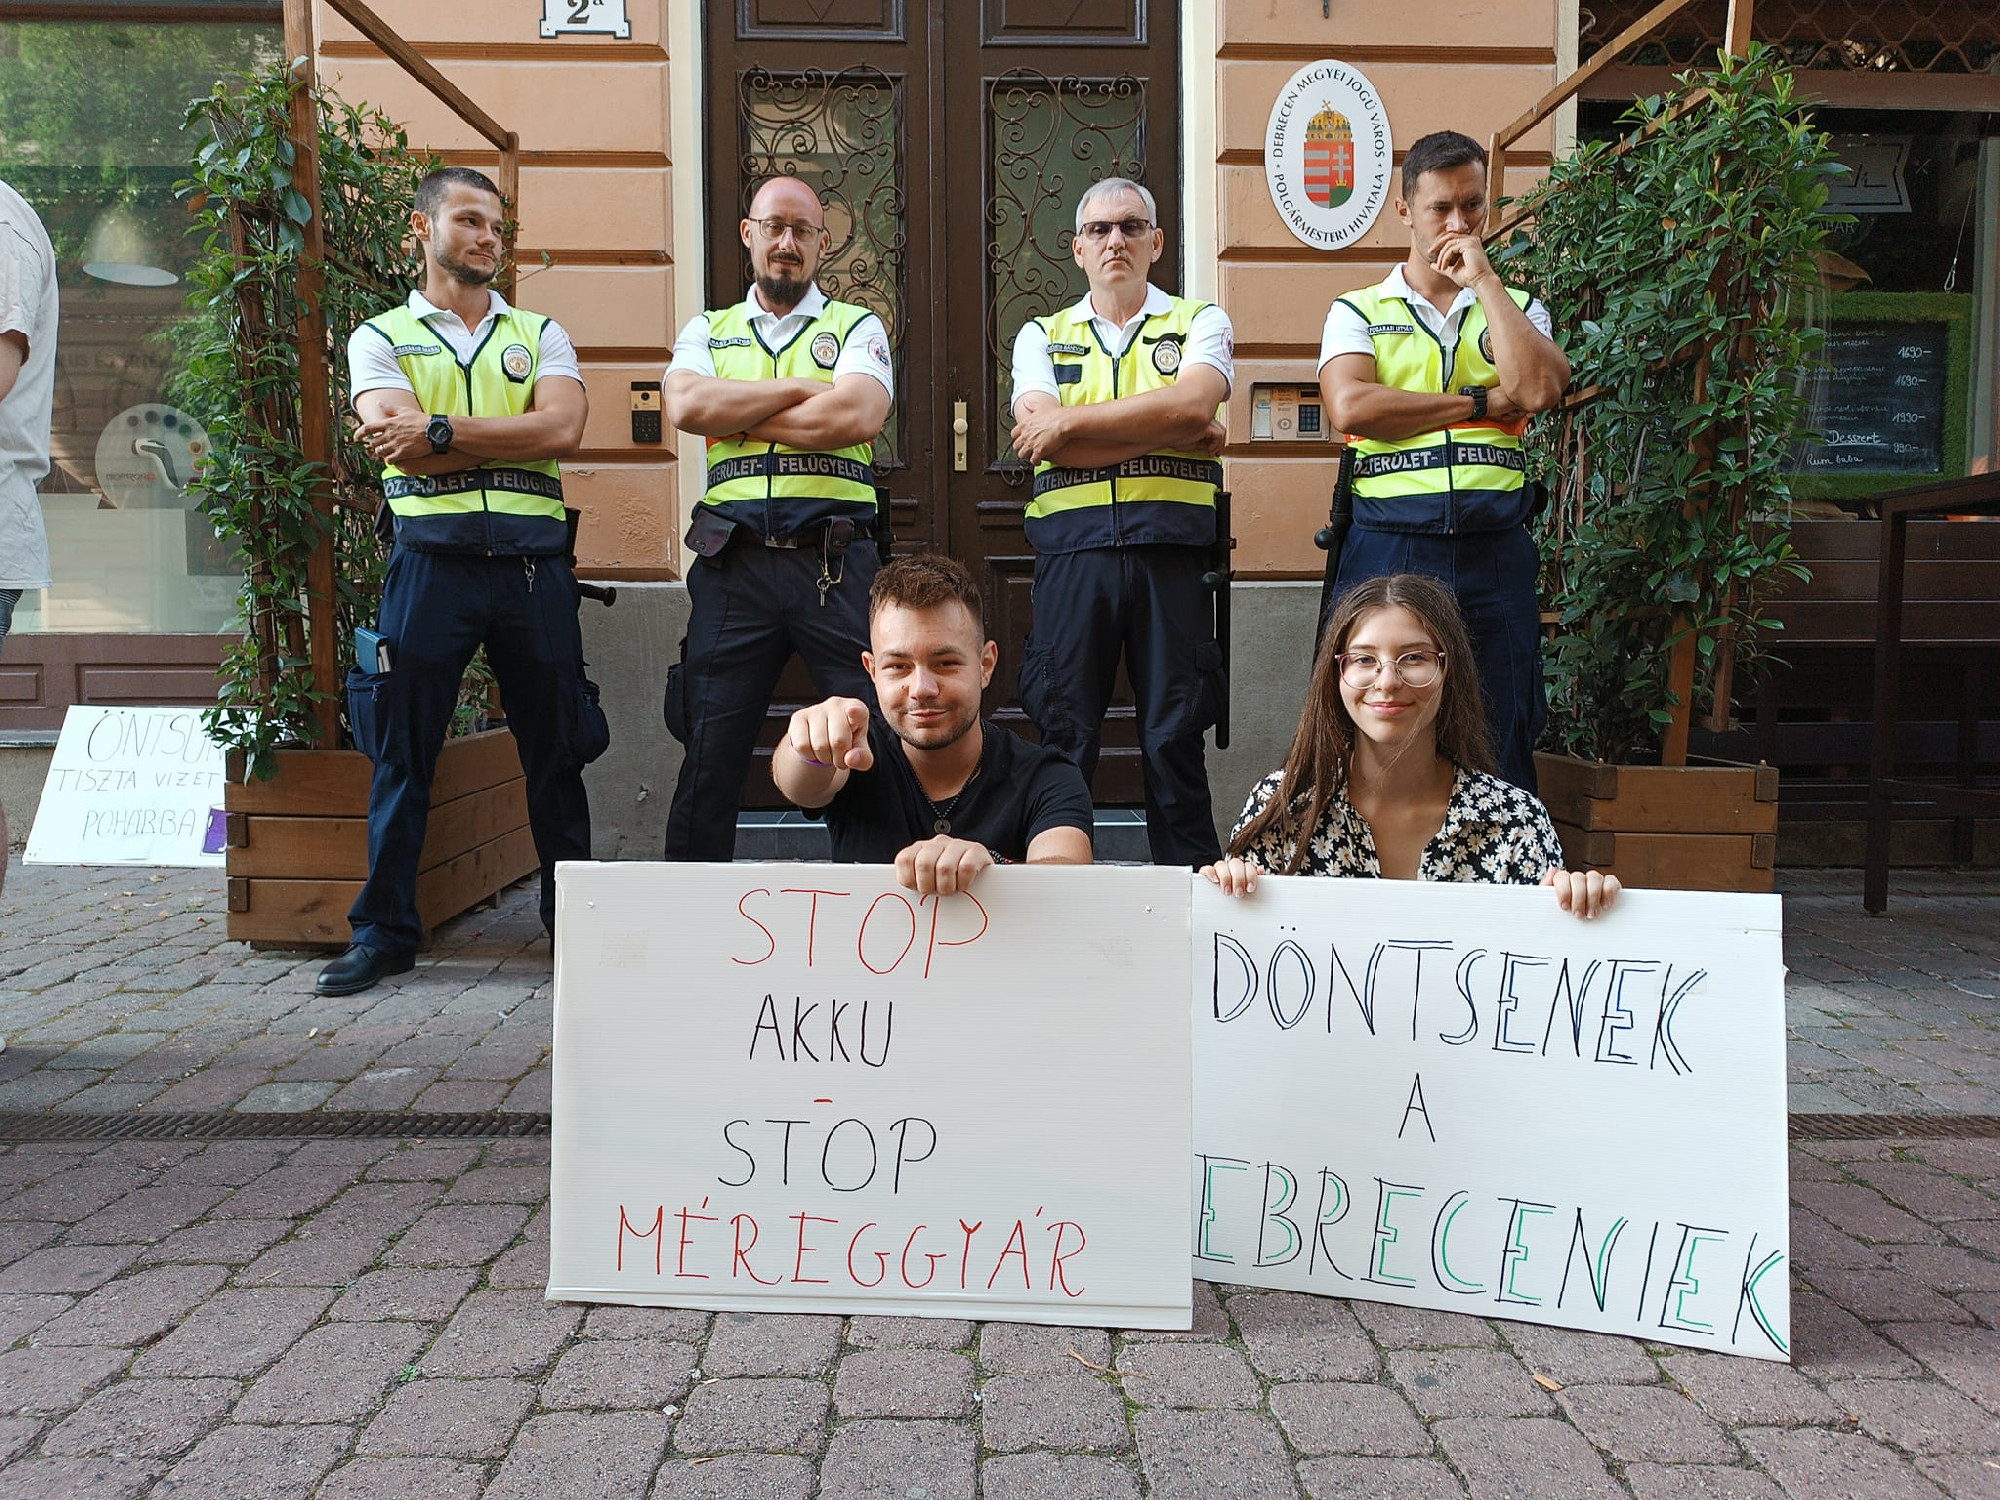 Tiltakozás az akkugyárak ellen: népszavazásért indít petíciót Debrecenben a Momentum